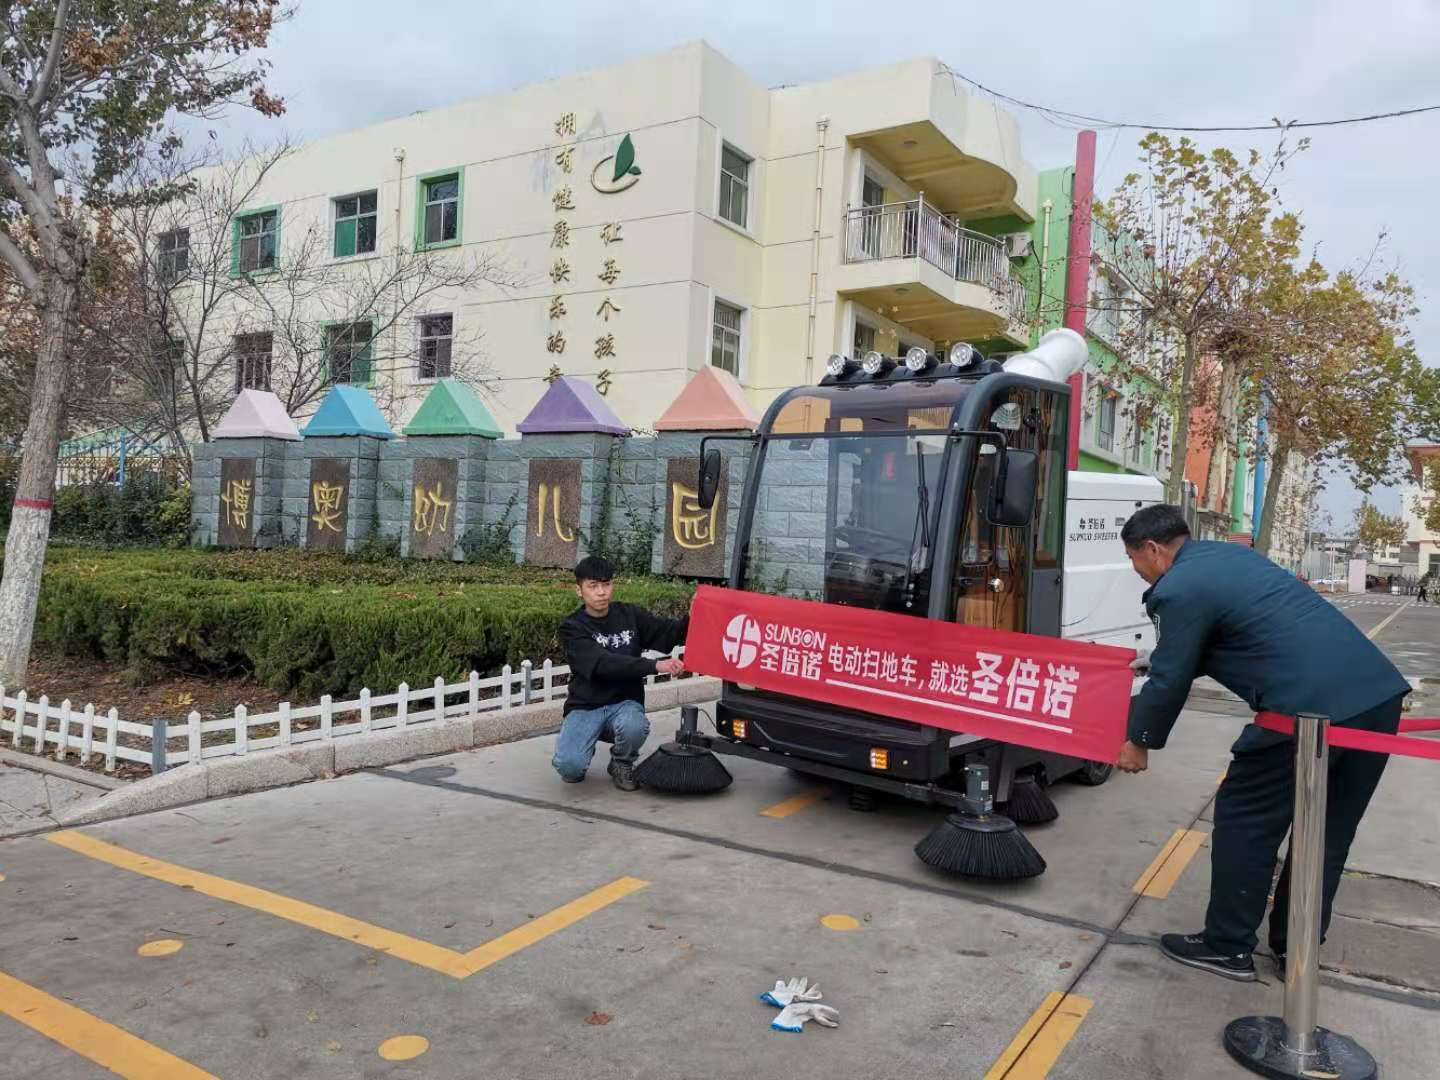 山东滨州某幼儿园用上电动扫地车